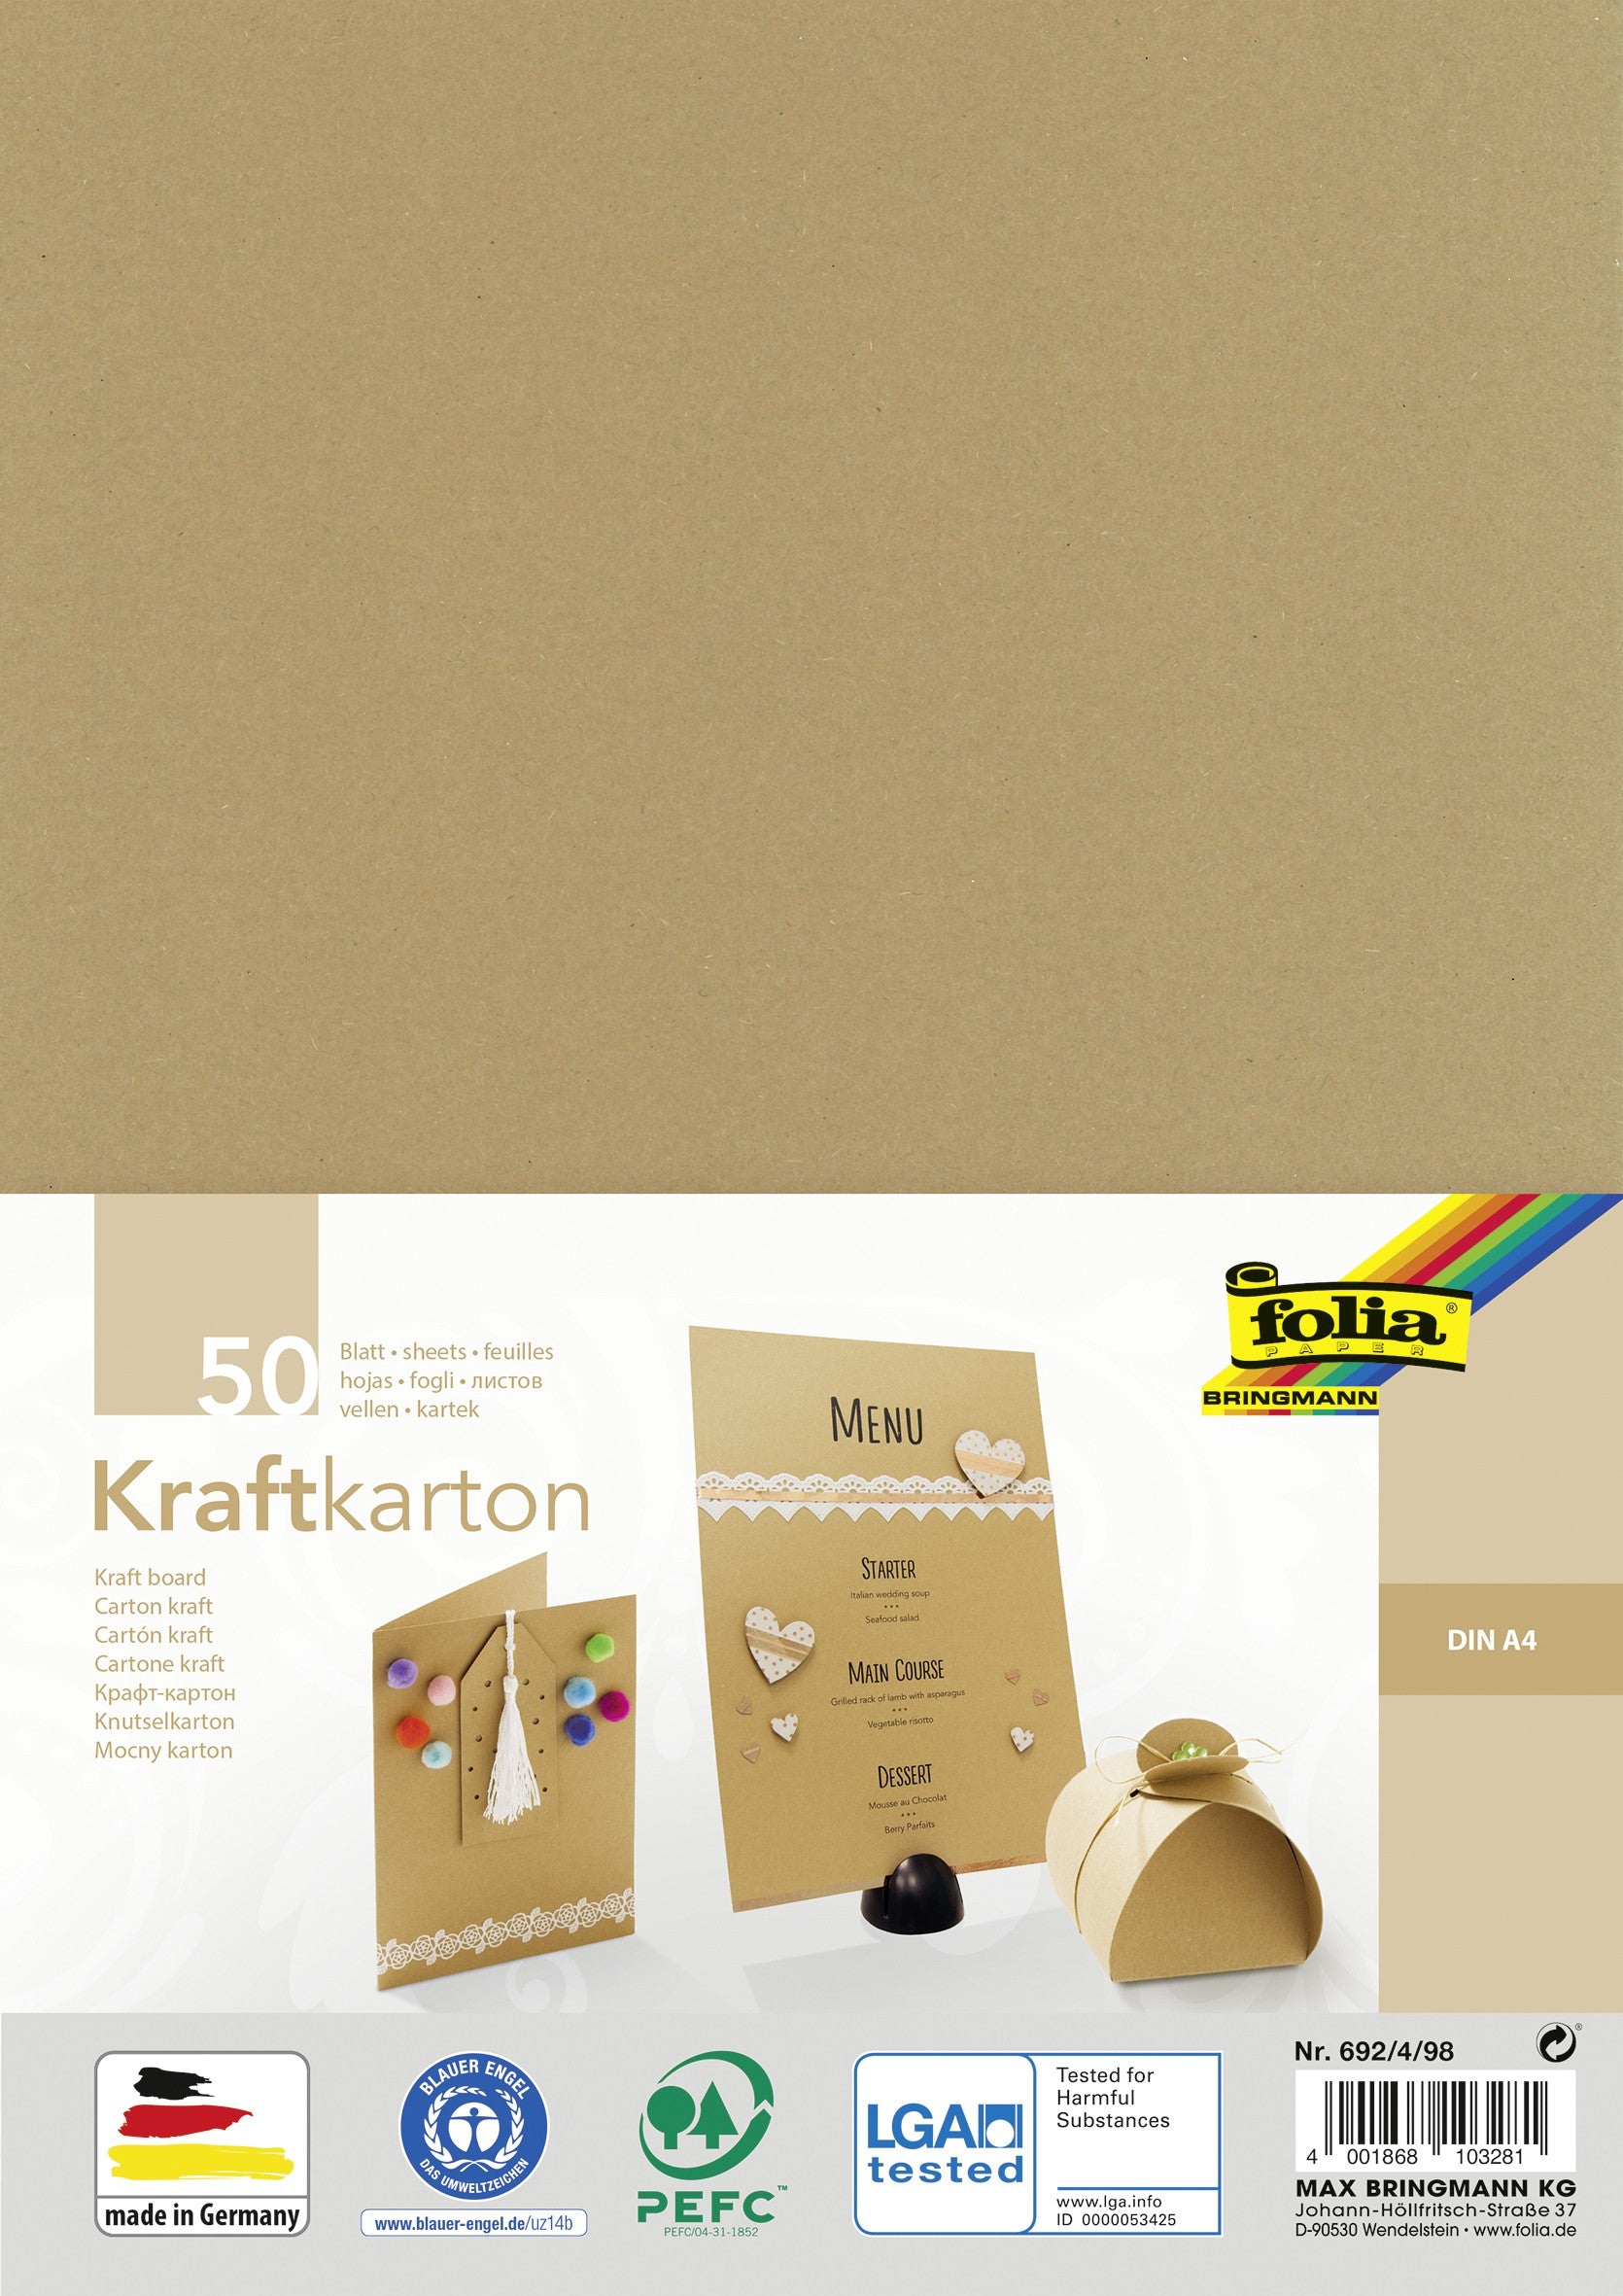 Papier Kraft A4 - 275 g - 25 feuilles - Papiers à dessin - Creavea